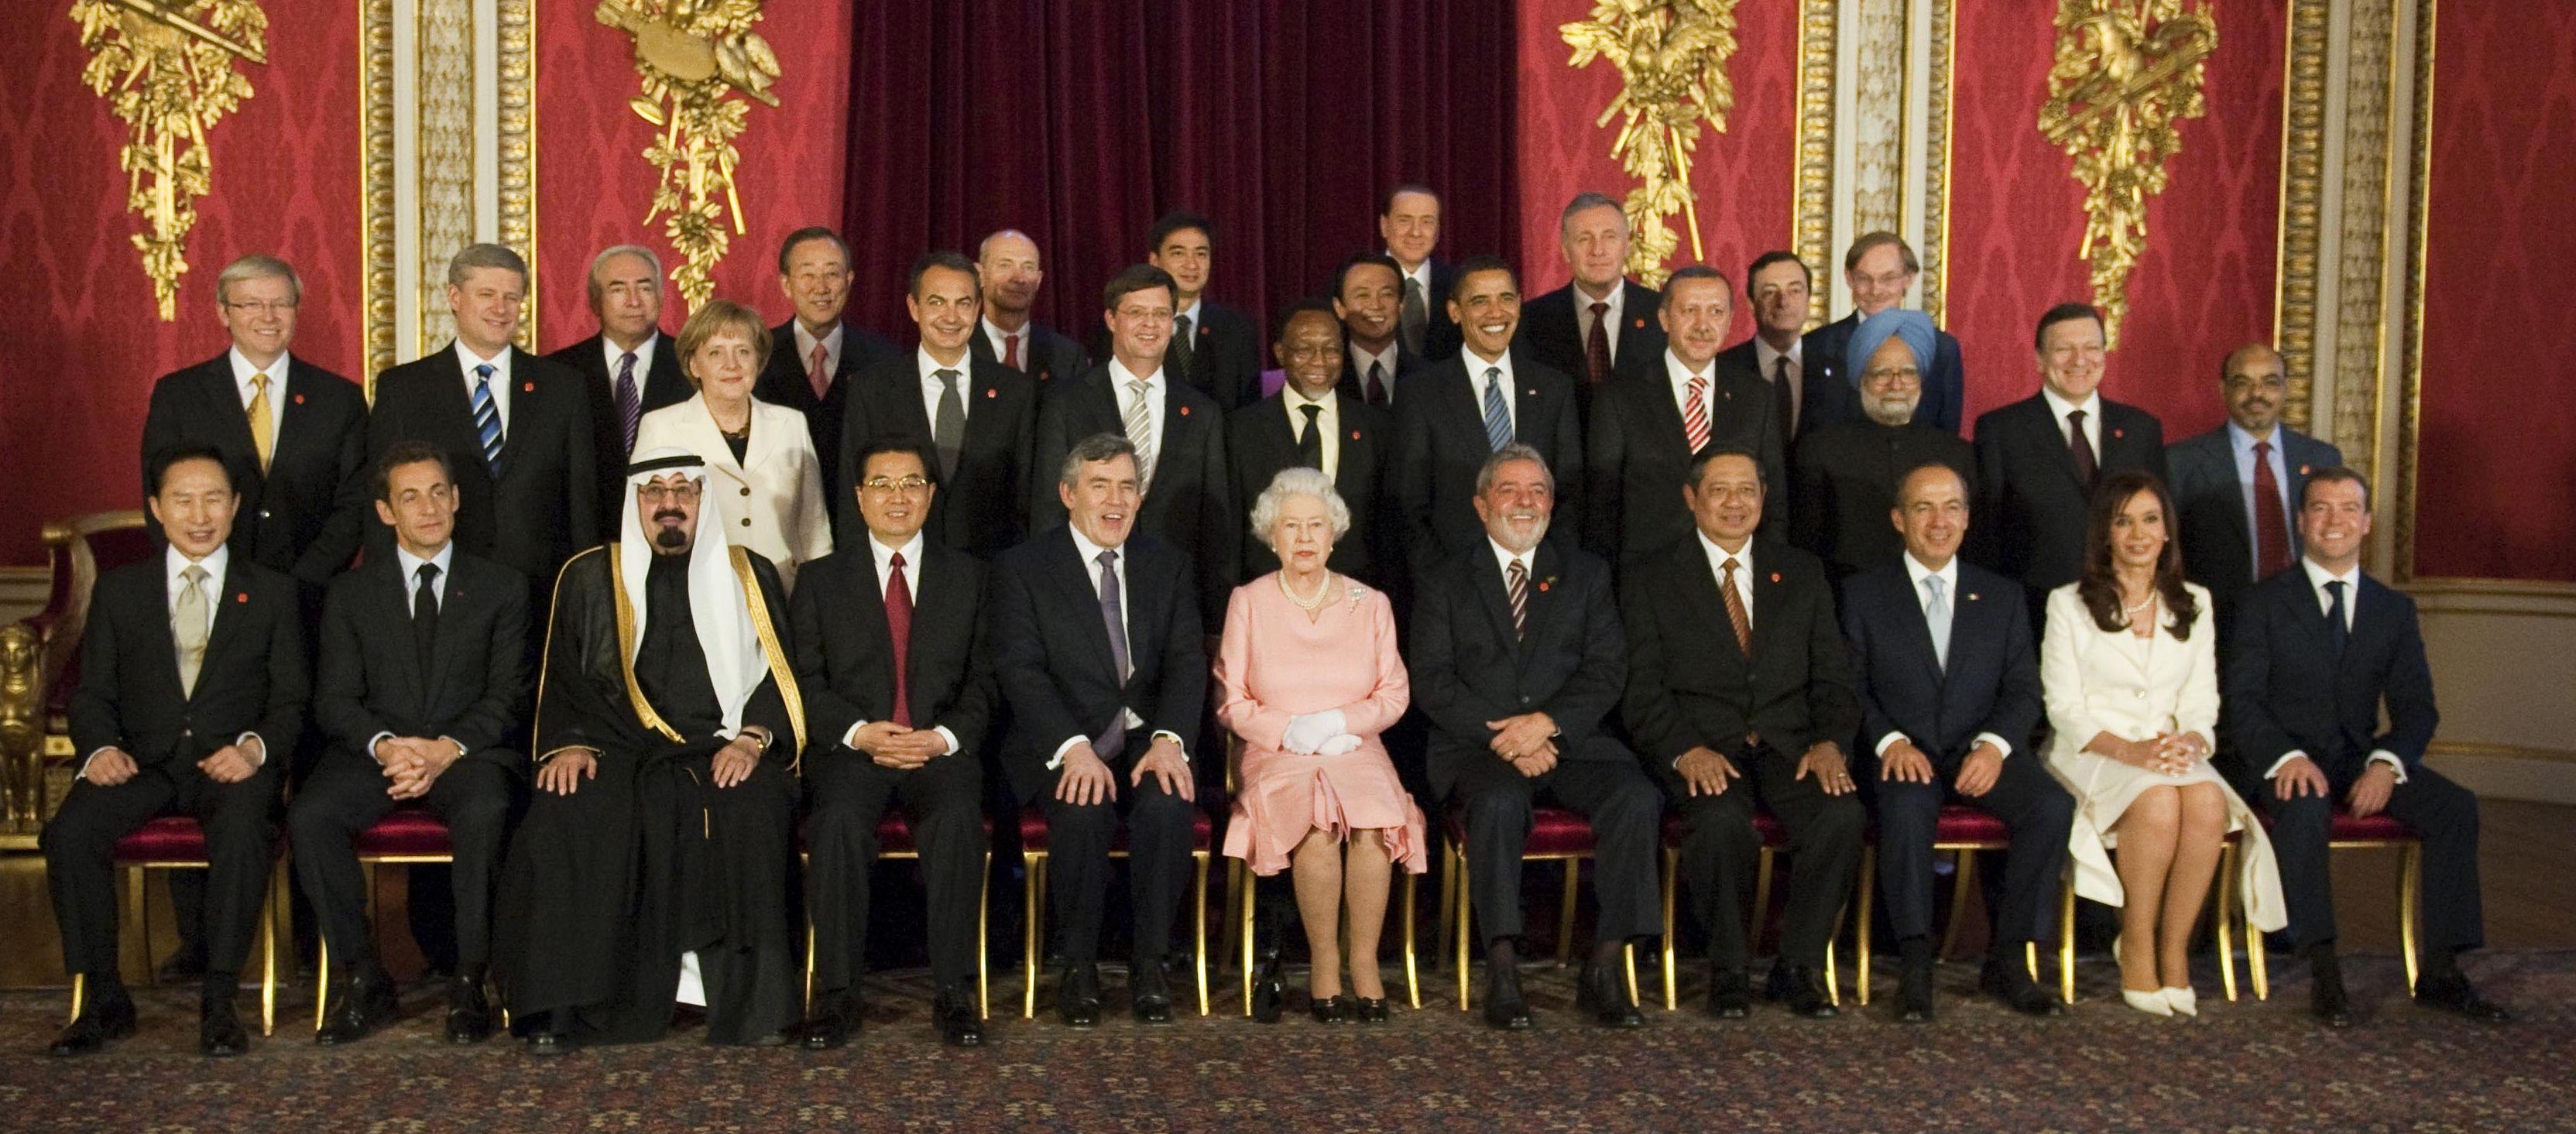 Лидеры стран Большой двадцатки на встрече у королевы Великобритании во время саммита G20 в Лондоне 2 апреля 2009 года